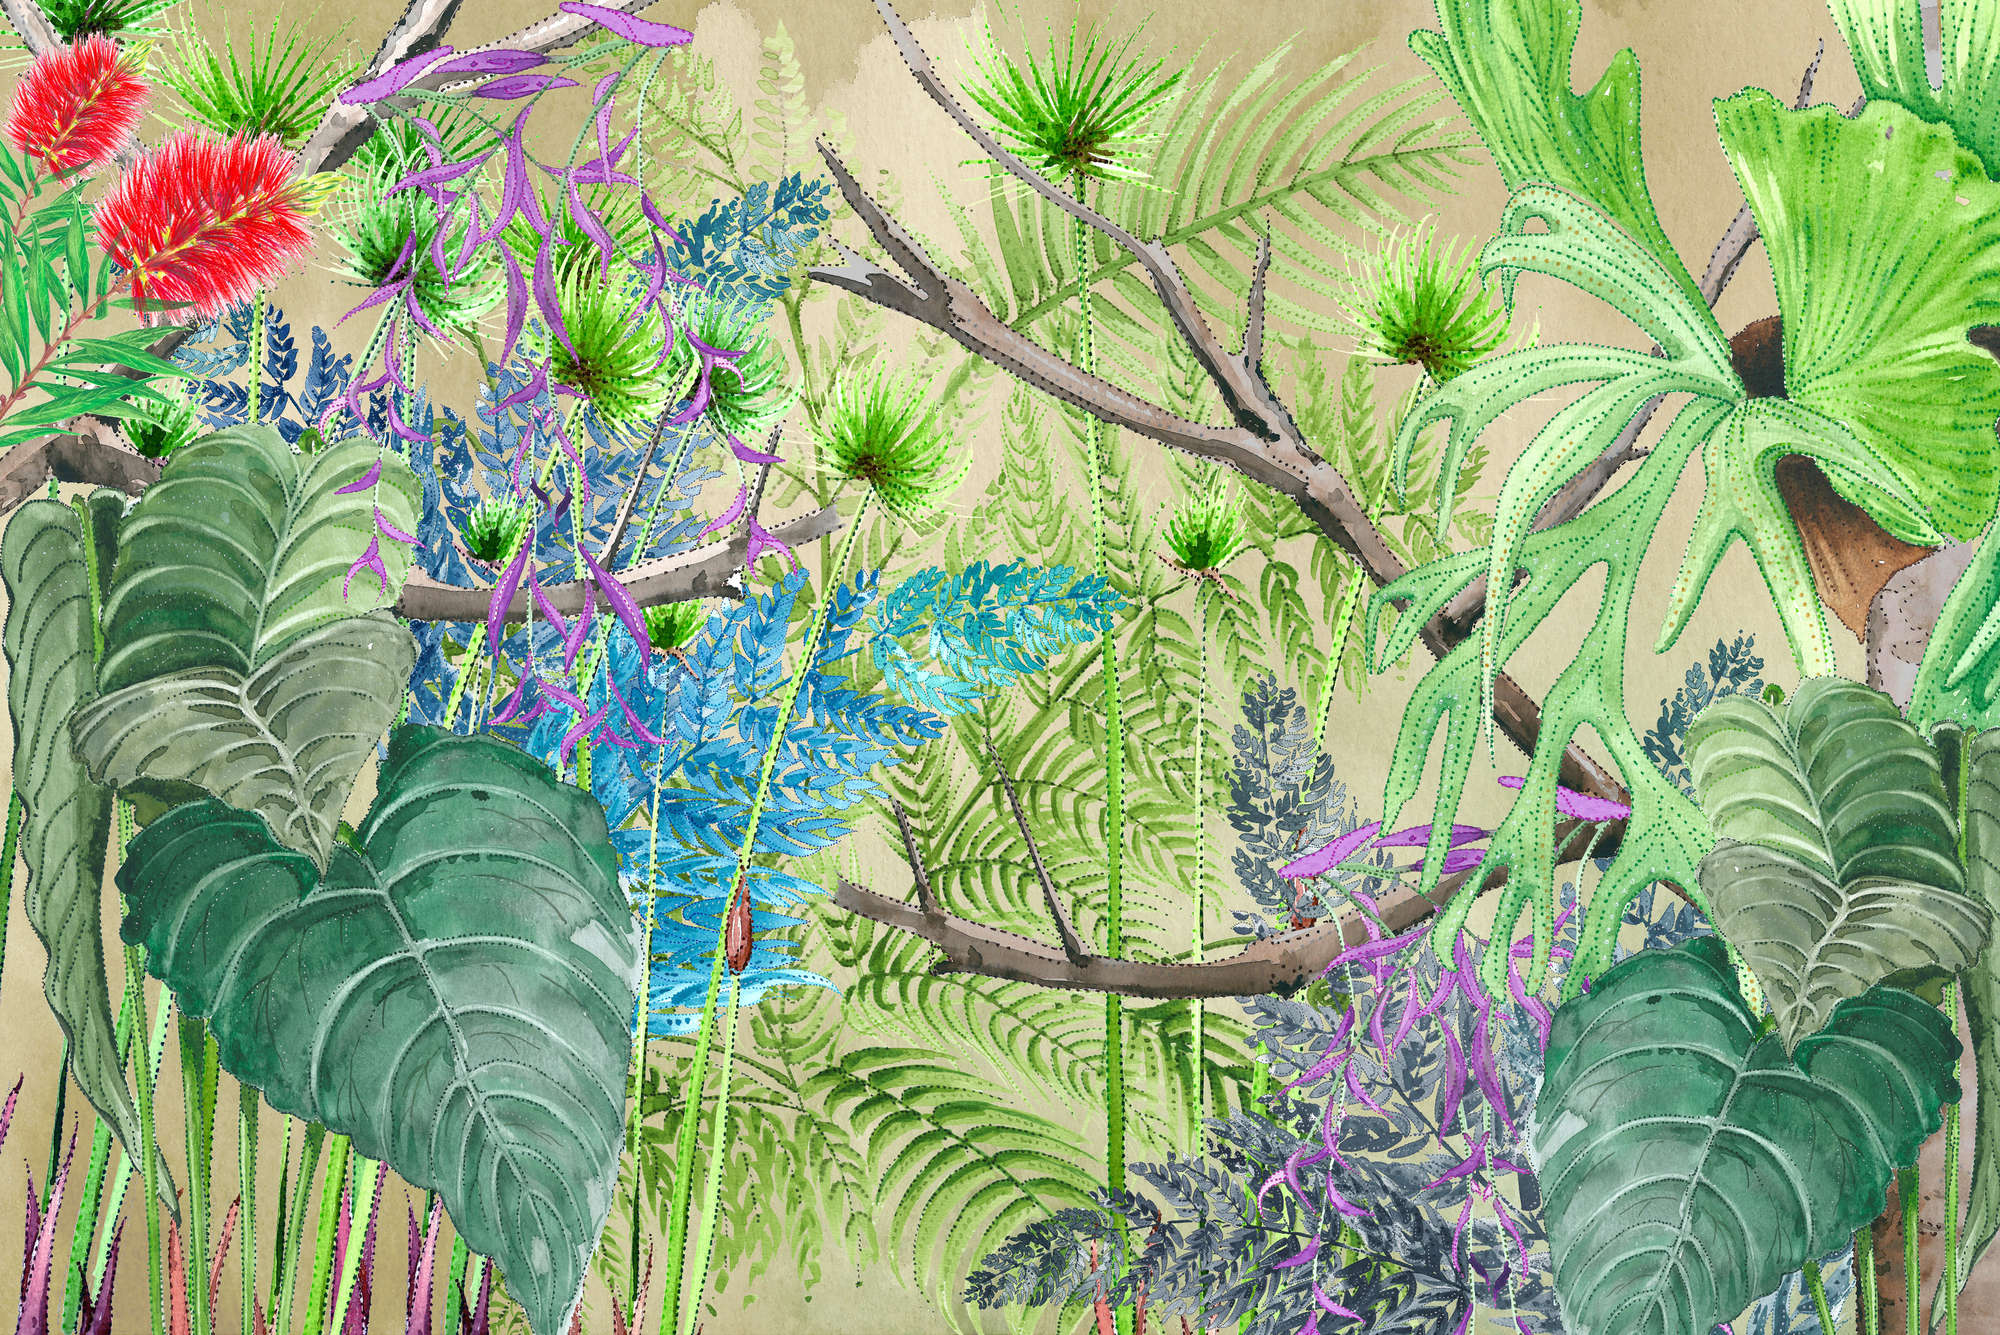             Papel pintado selva con flores en azul y verde sobre vellón liso mate
        